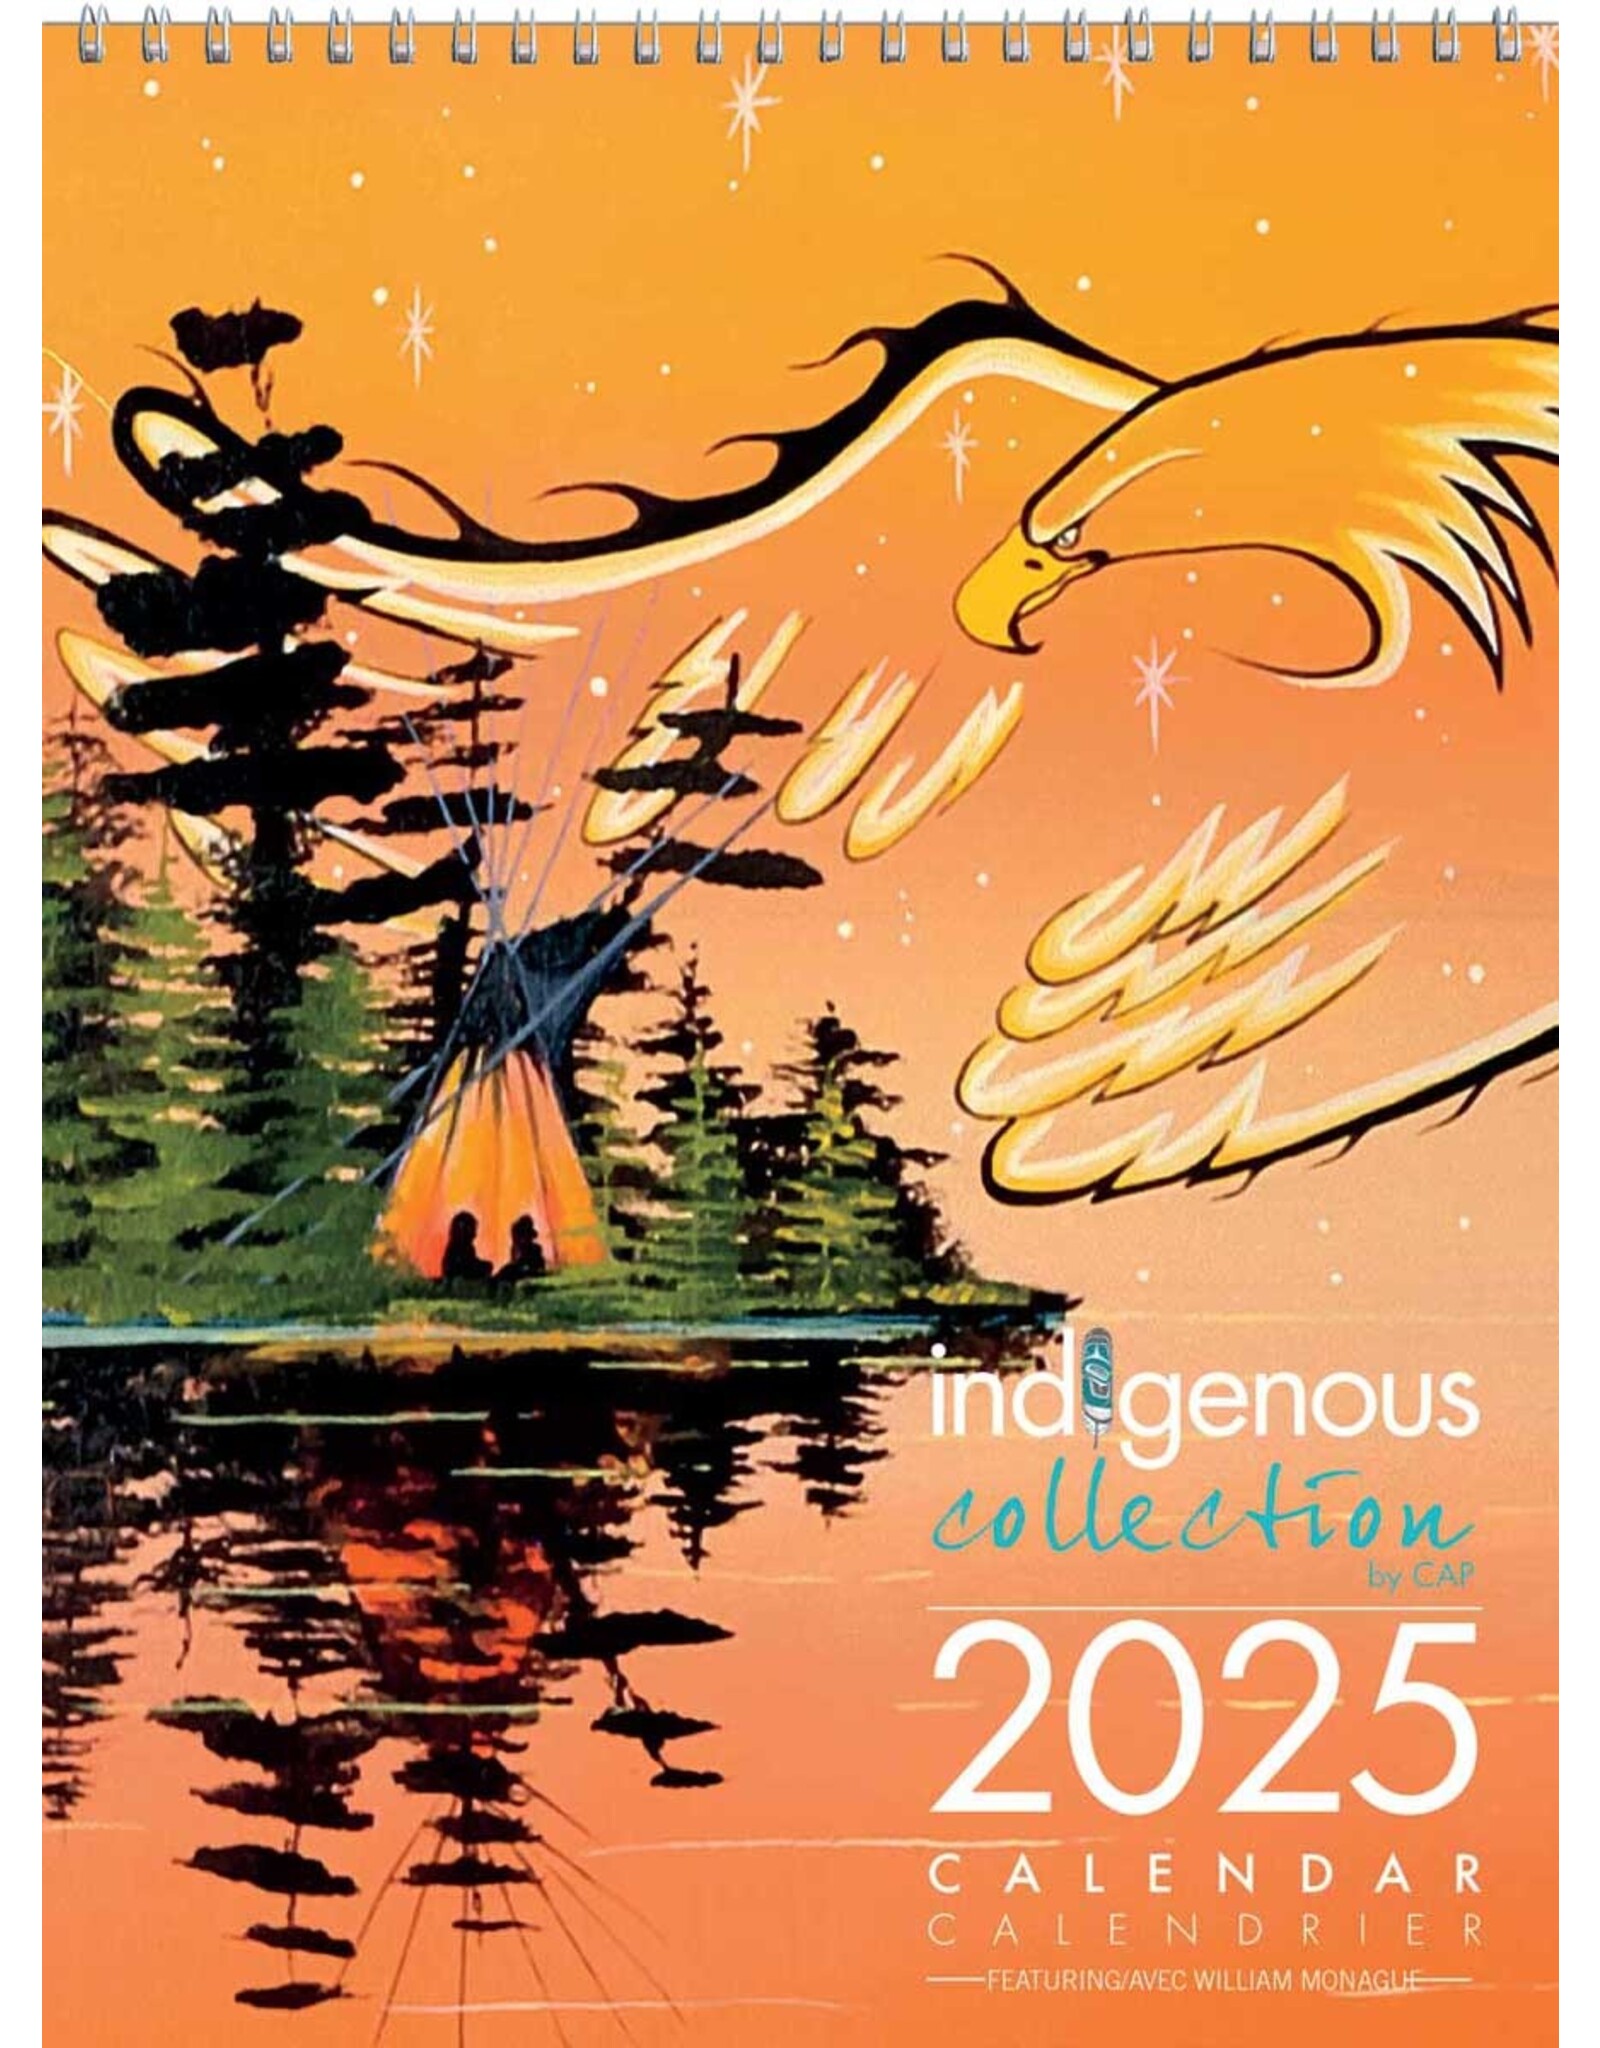 William Monague 2025 Calendar - CAL122